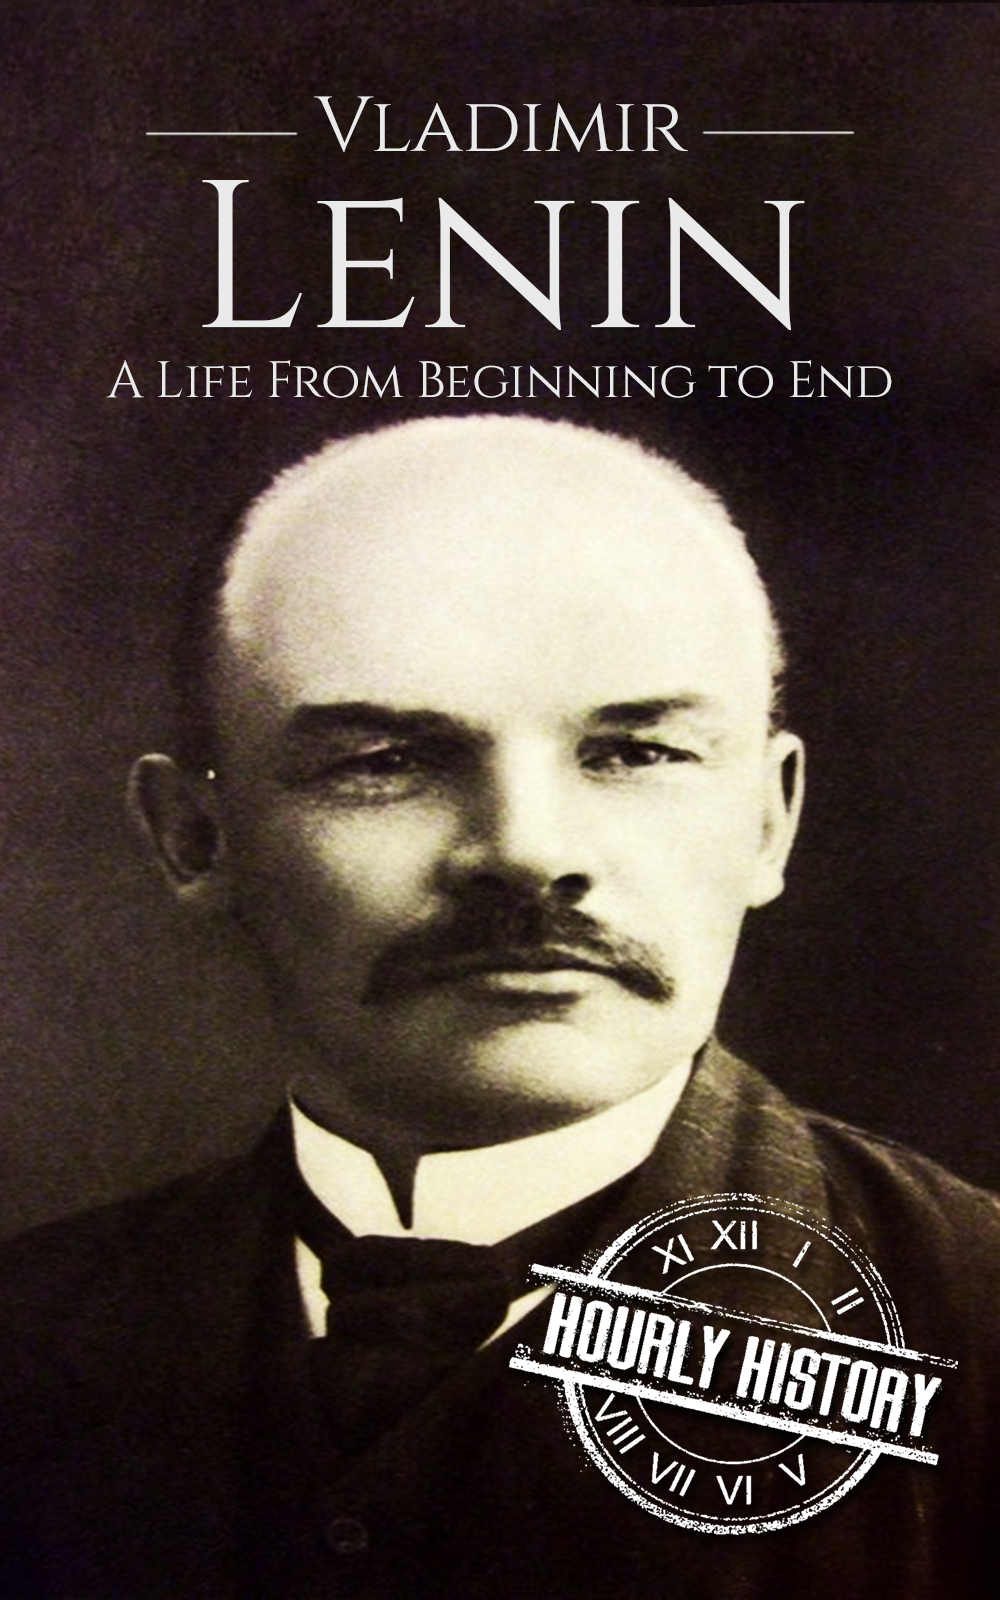 Book cover for Vladimir Lenin